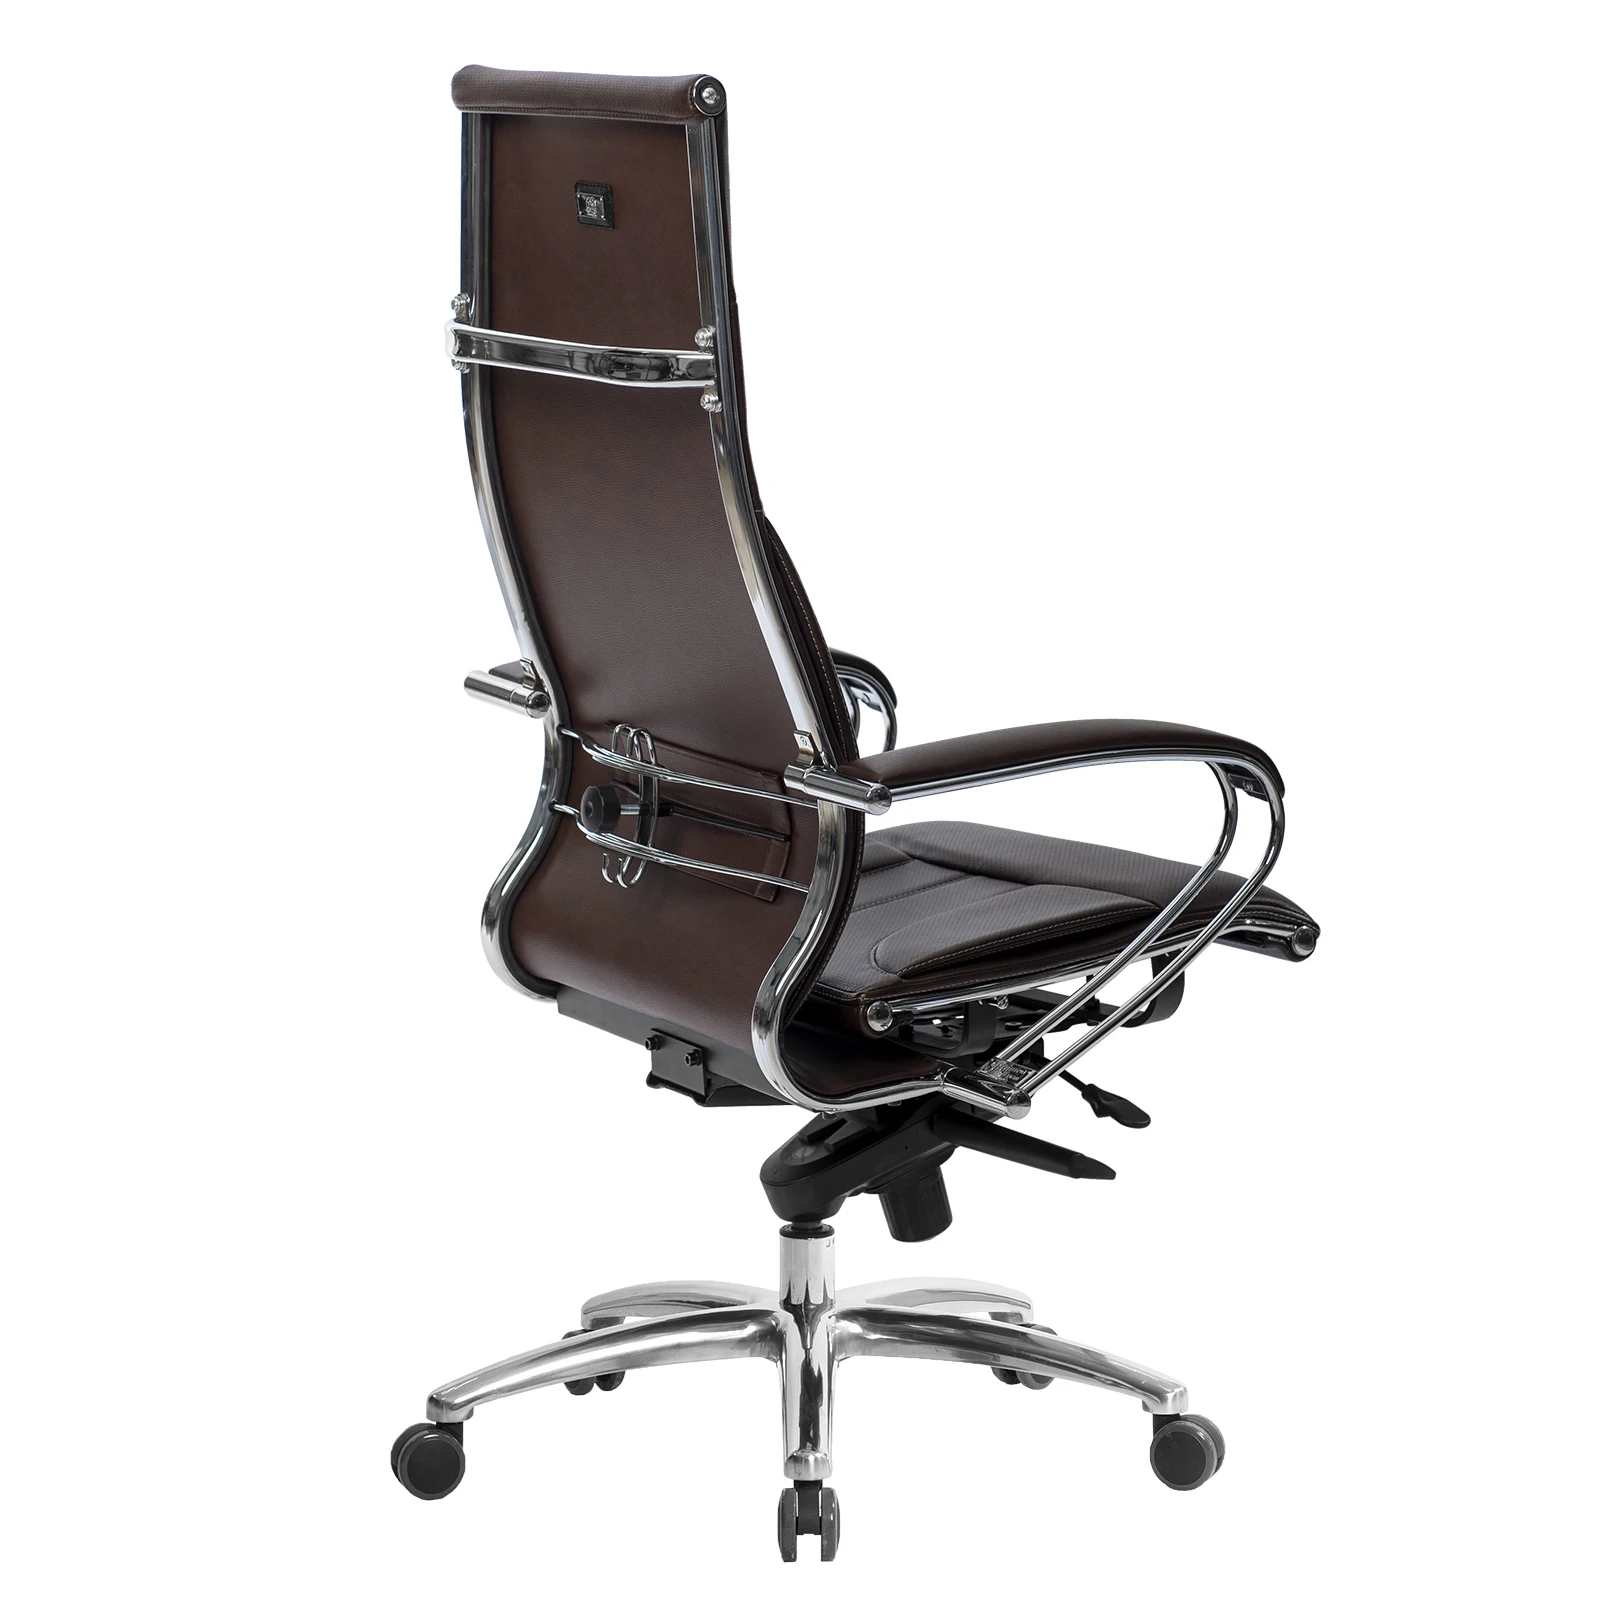 Кресло Samurai Lux (коричневое) компьютерное кресло с высокой спинкой. | Мебель